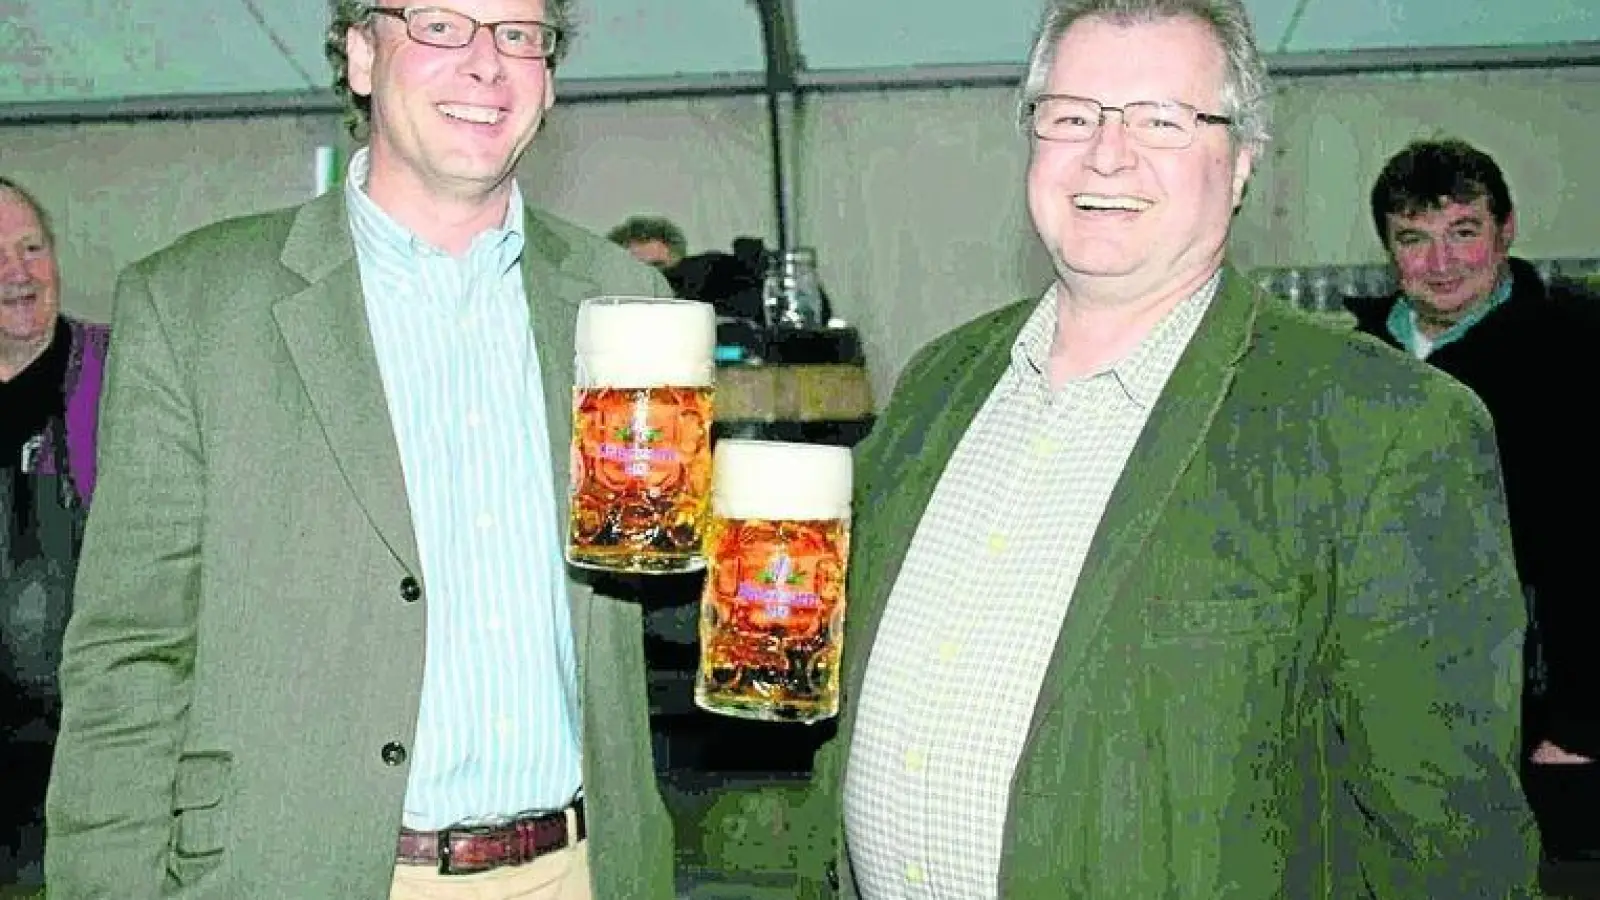 &lt;p&gt;  &lt;x_bildunterschr&gt;  &lt;b&gt;Auf ein gutes Gelingen &lt;/b&gt; des fünften Baarer Brauereifestes stießen Baron Franz Groß von Trockau (links) und Bürgermeister Leonhard Kandler zum Auftakt am Donnerstagabend an. &lt;/x_bildunterschr&gt;  &lt;/p&gt;